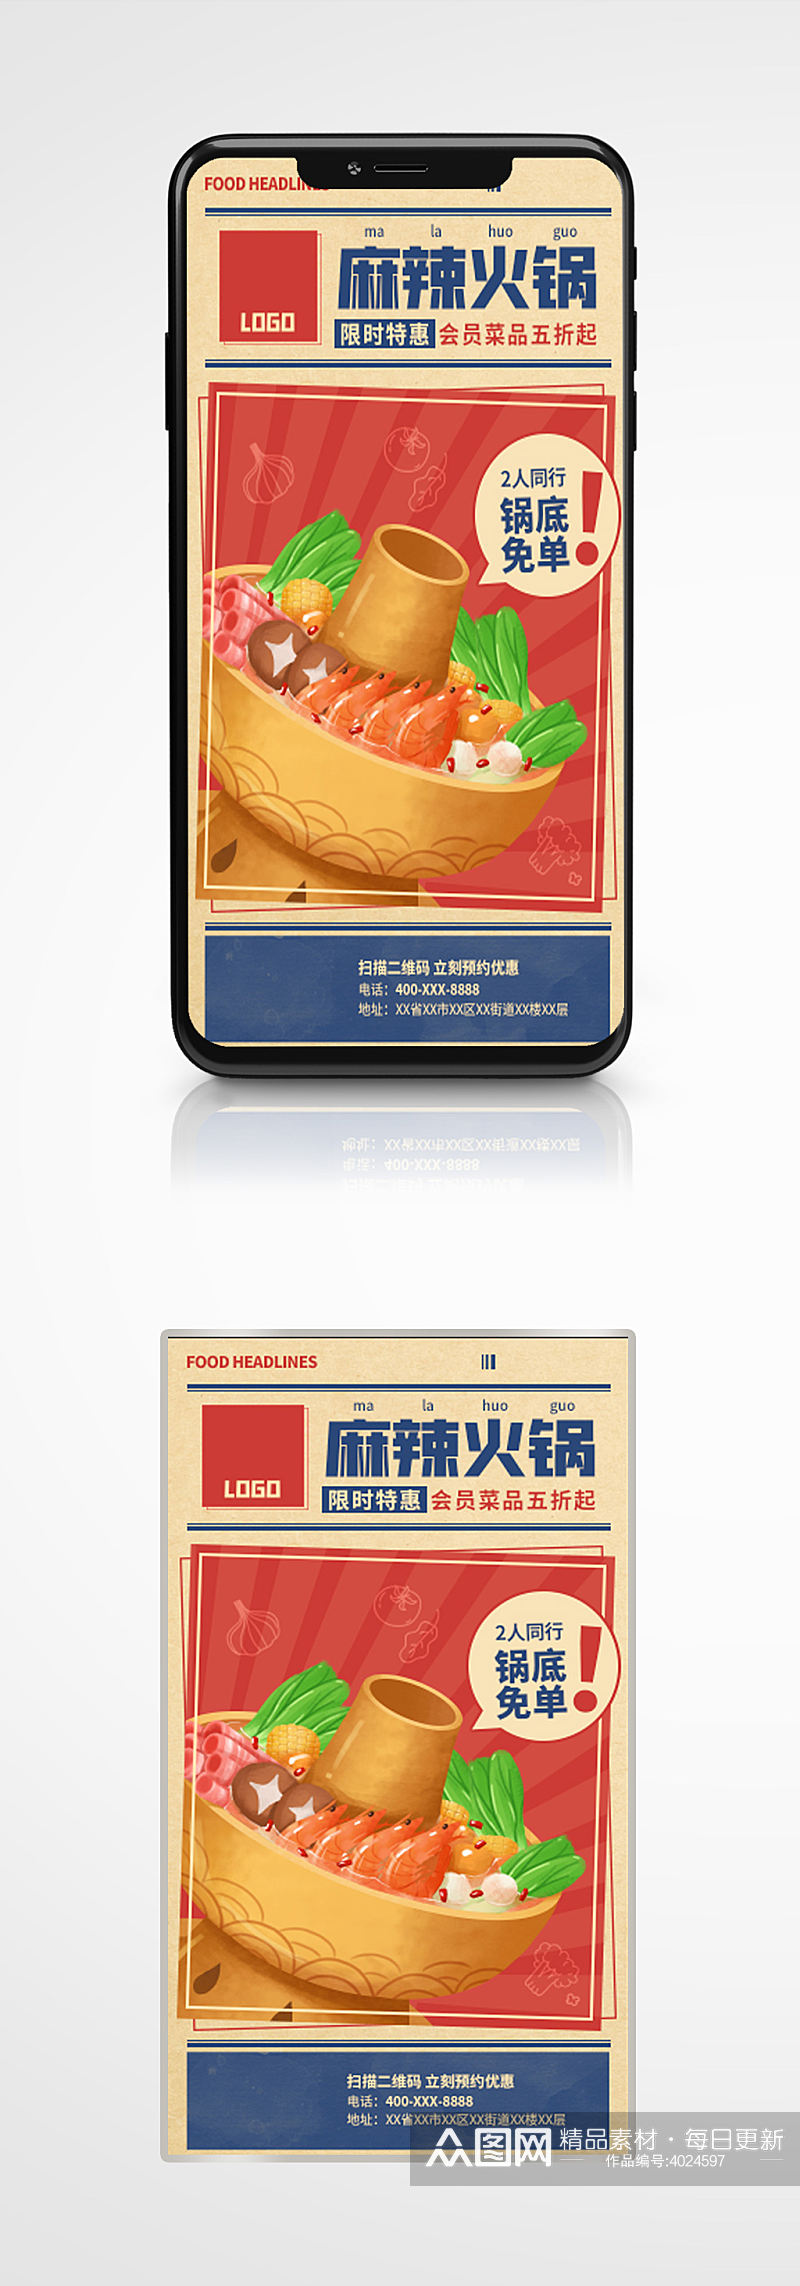 火锅新店开业烧烤自助餐促销美食海报手绘素材